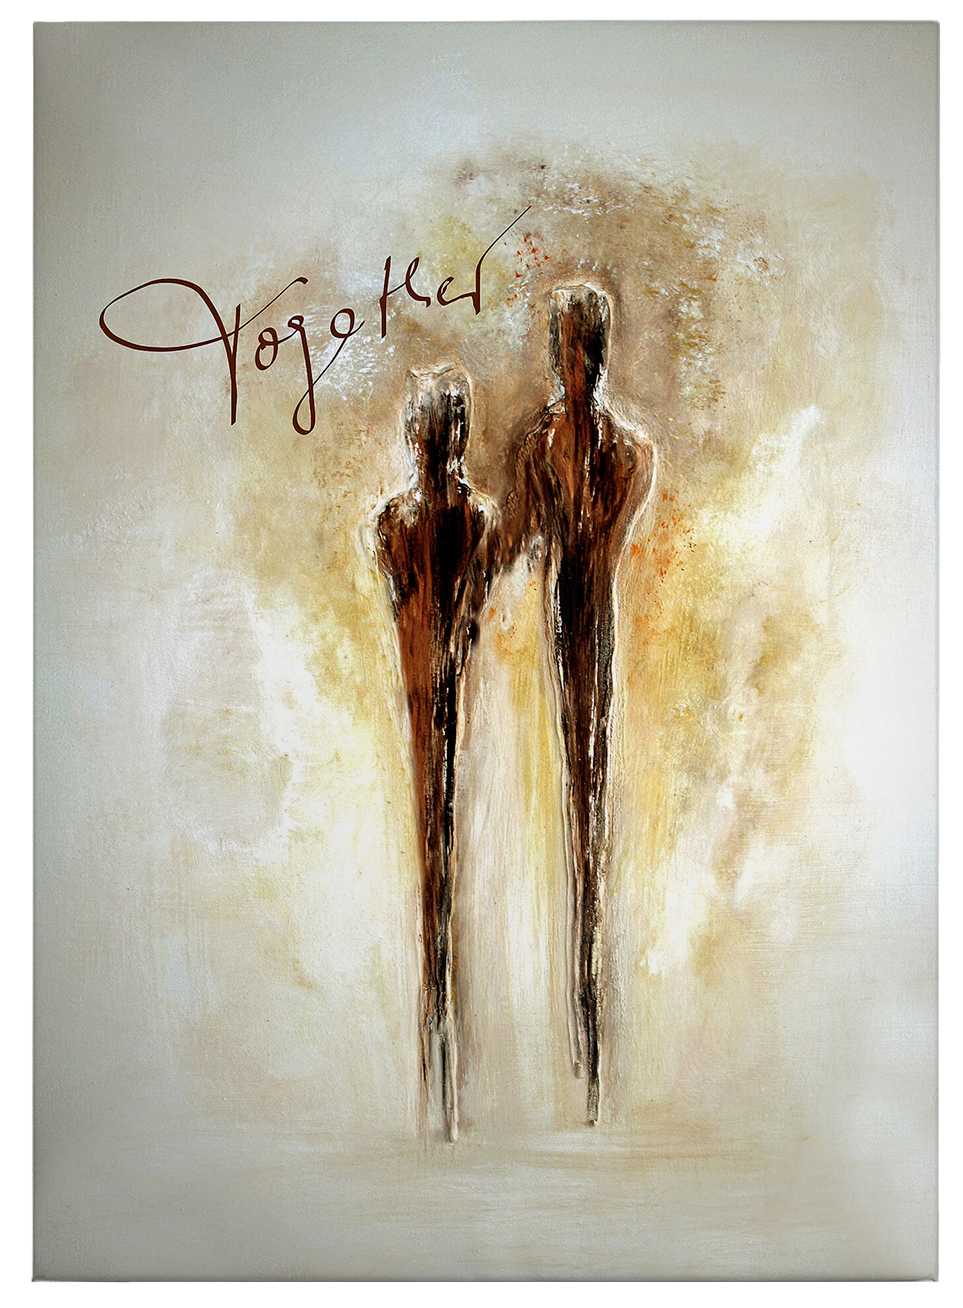             Tableau sur toile Art de Tina Melz "Together", format vertical - 0,50 m x 0,70 m
        